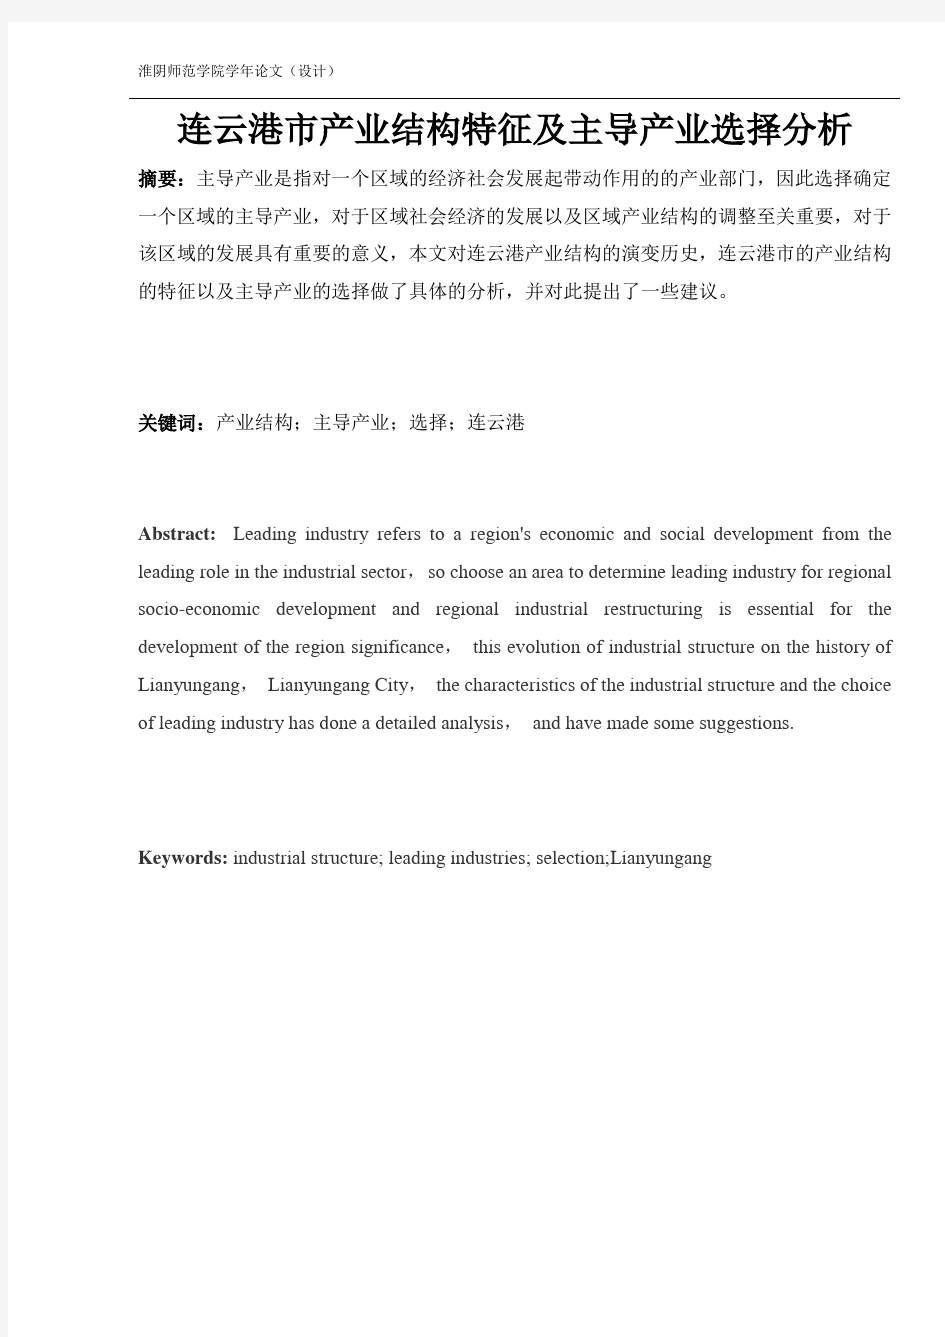 连云港市产业结构特征及主导产业选择分析